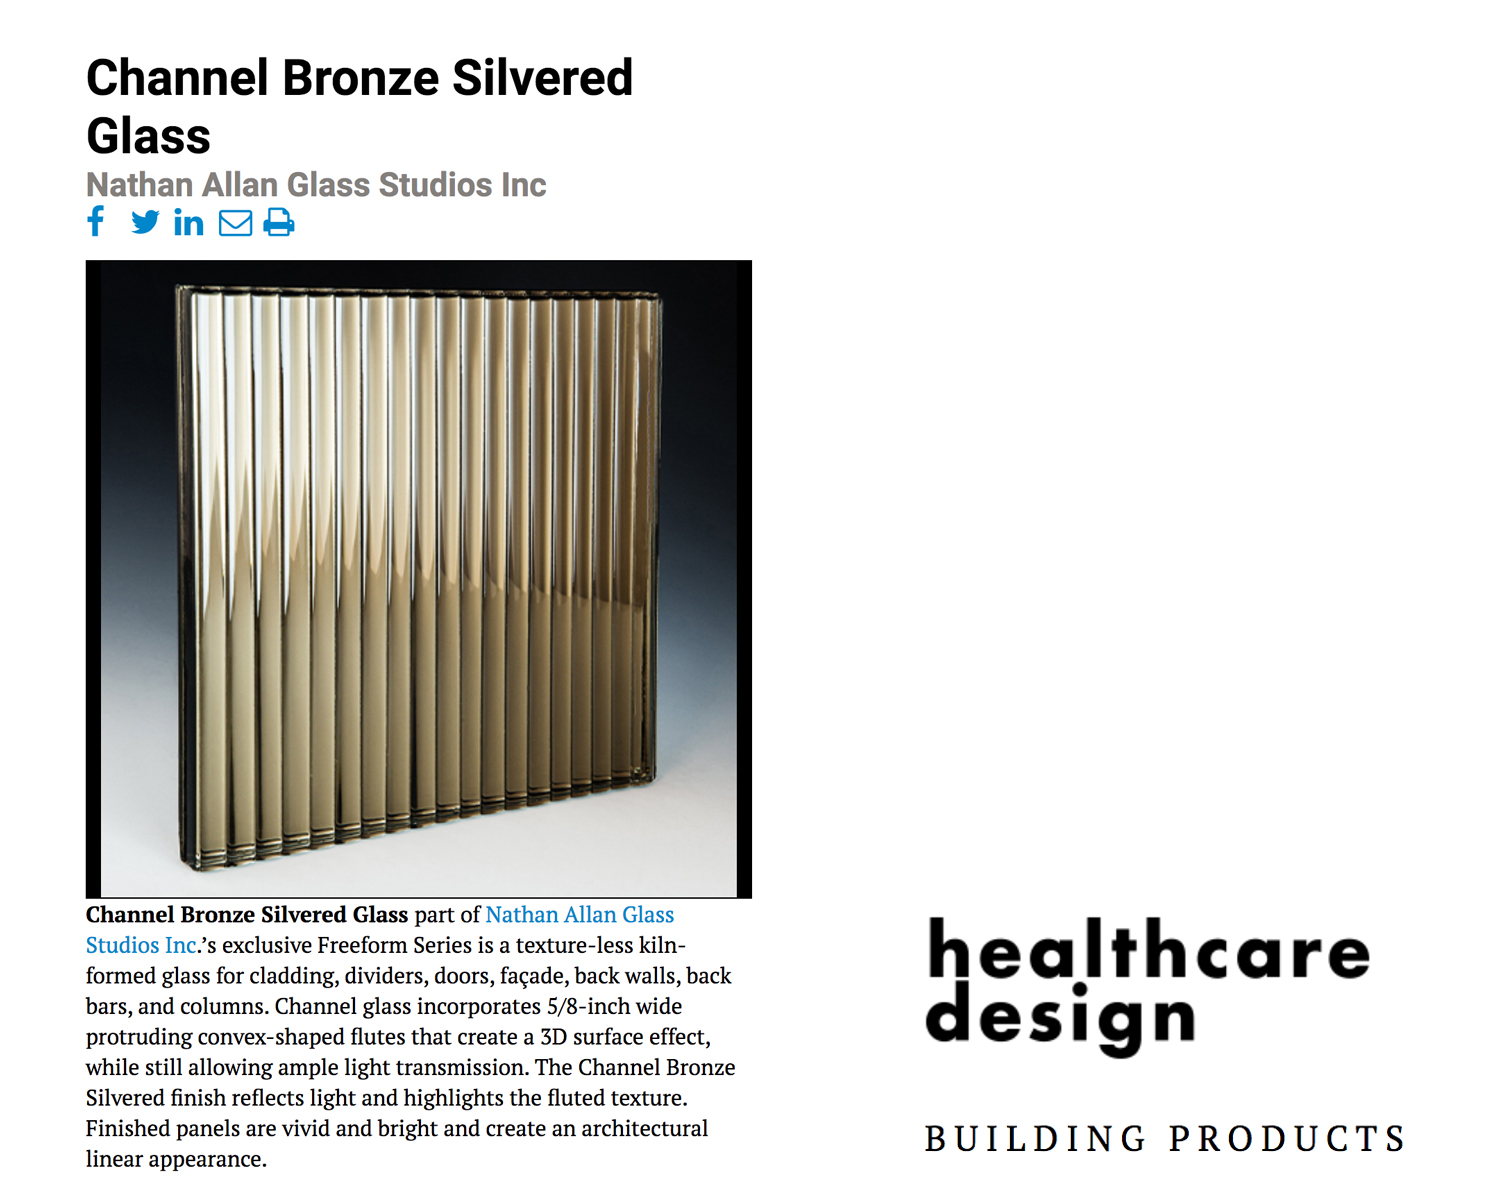 Healthcare Design Magazine| Channel Bronze Silvered Glass